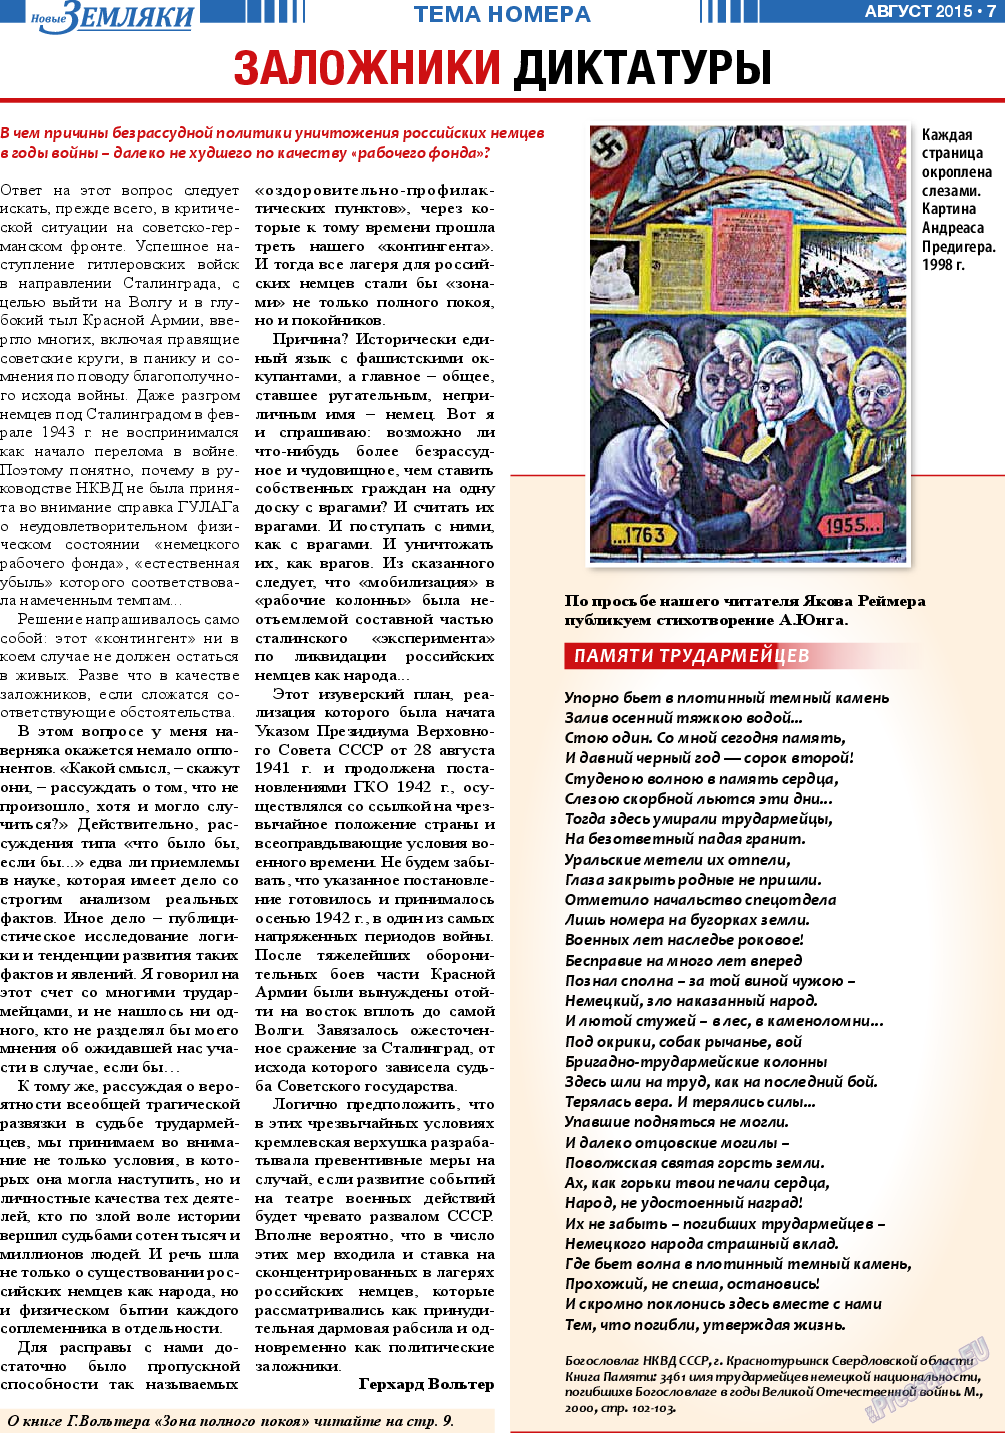 Новые Земляки (газета). 2015 год, номер 8, стр. 7